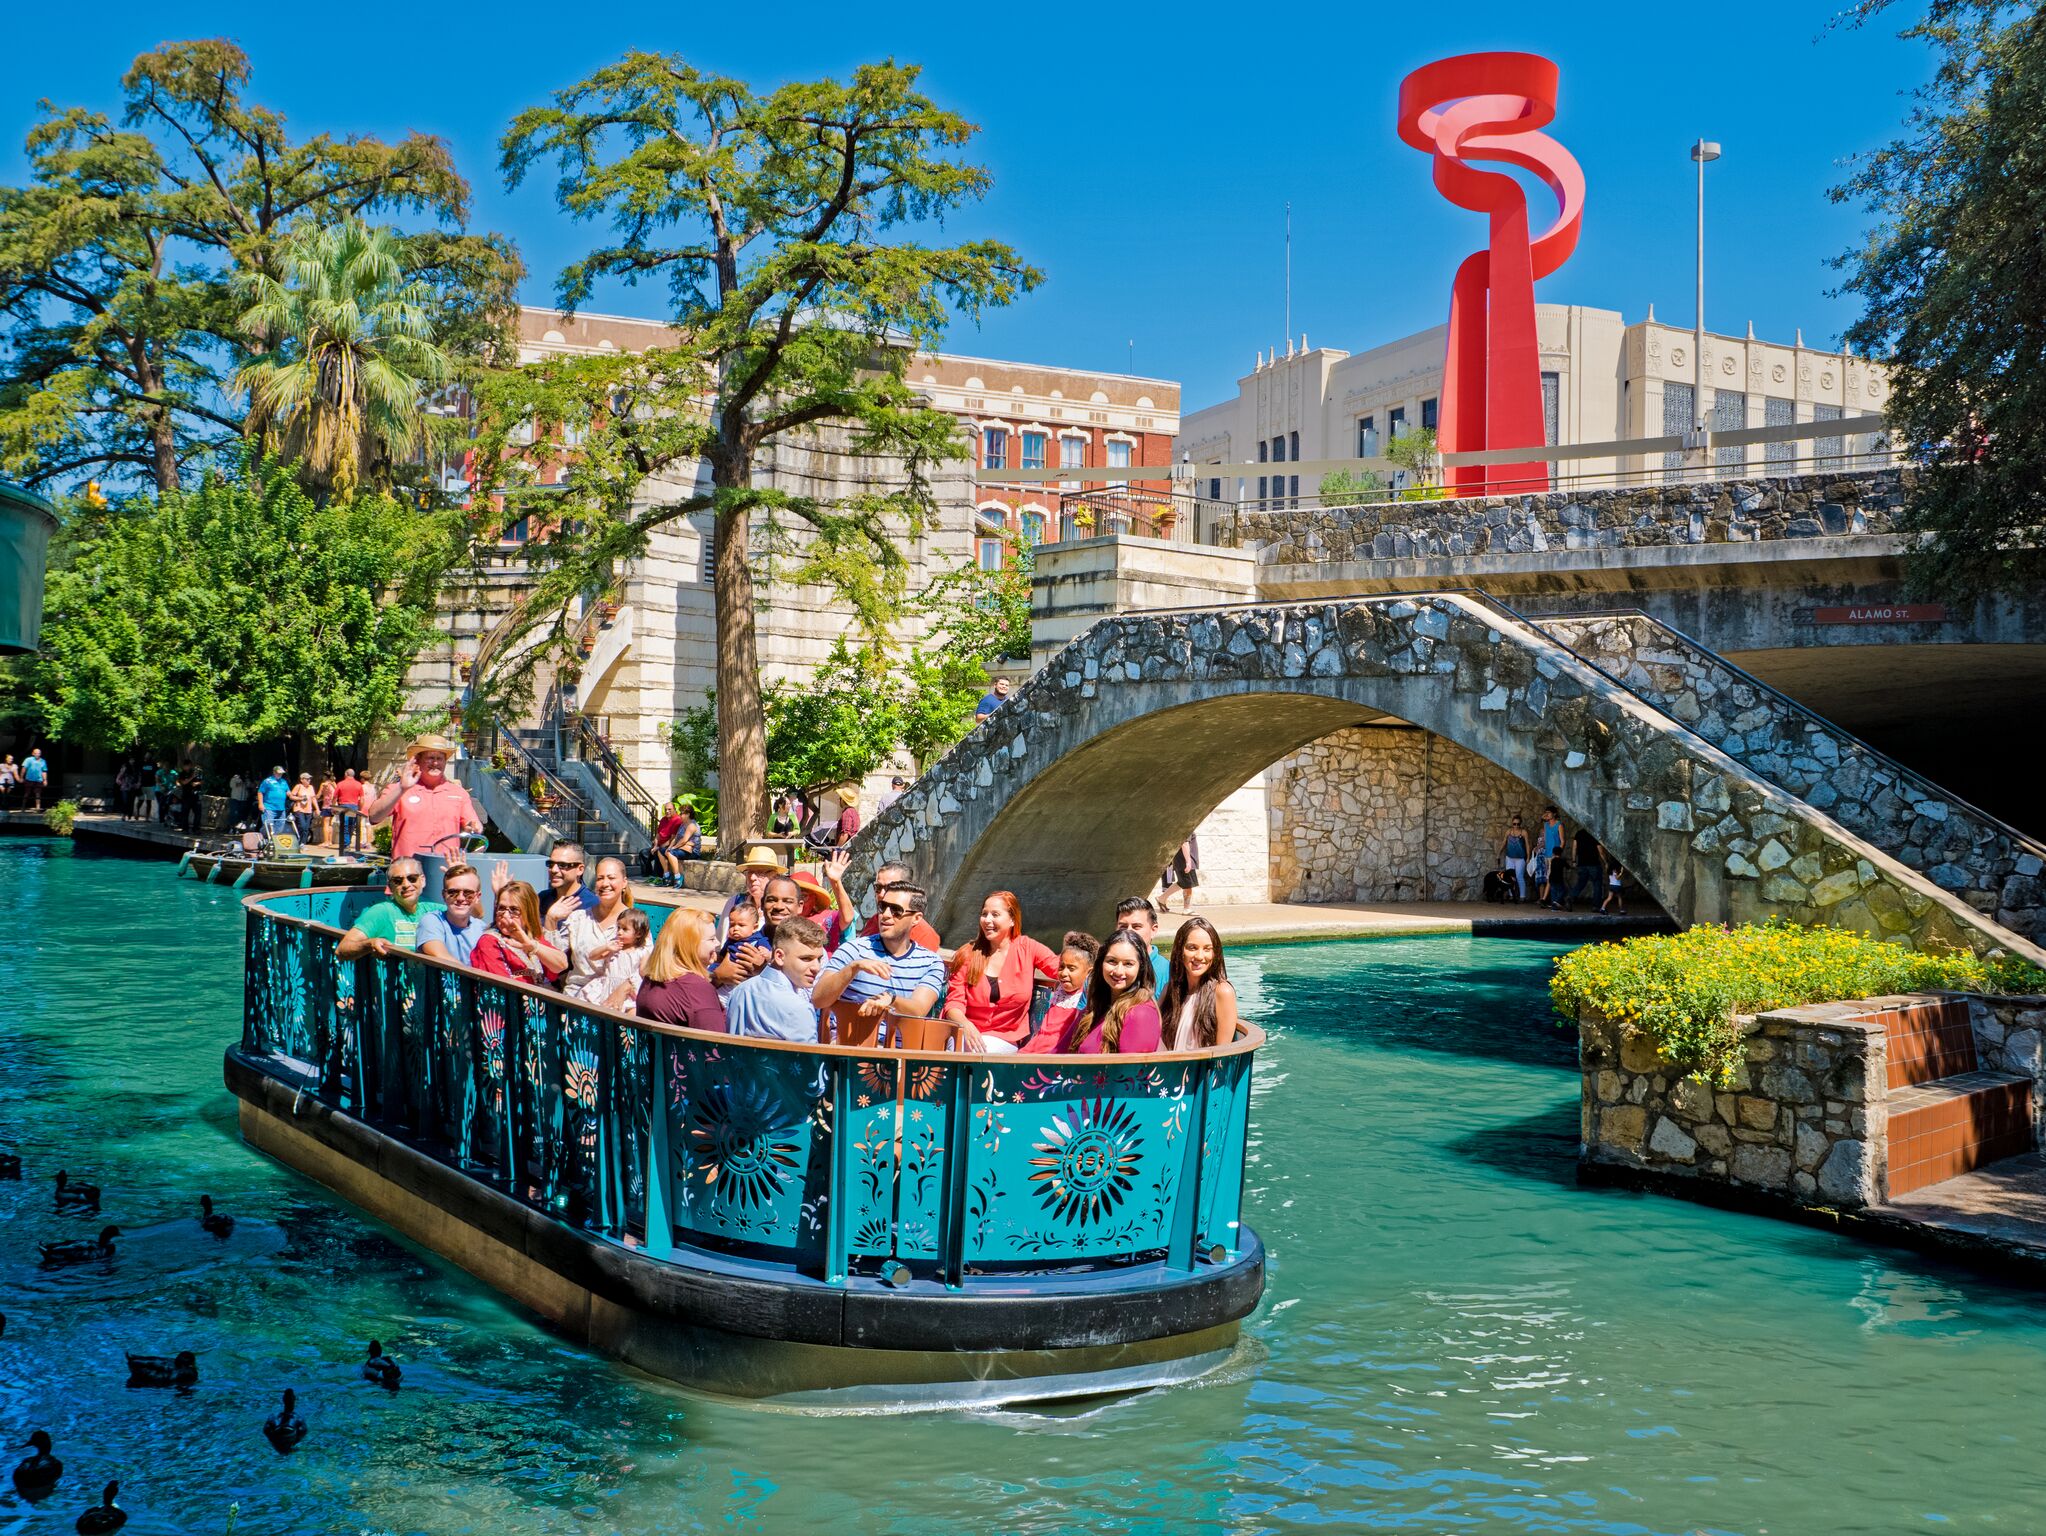 17 fun ways to experience the San Antonio River Walk